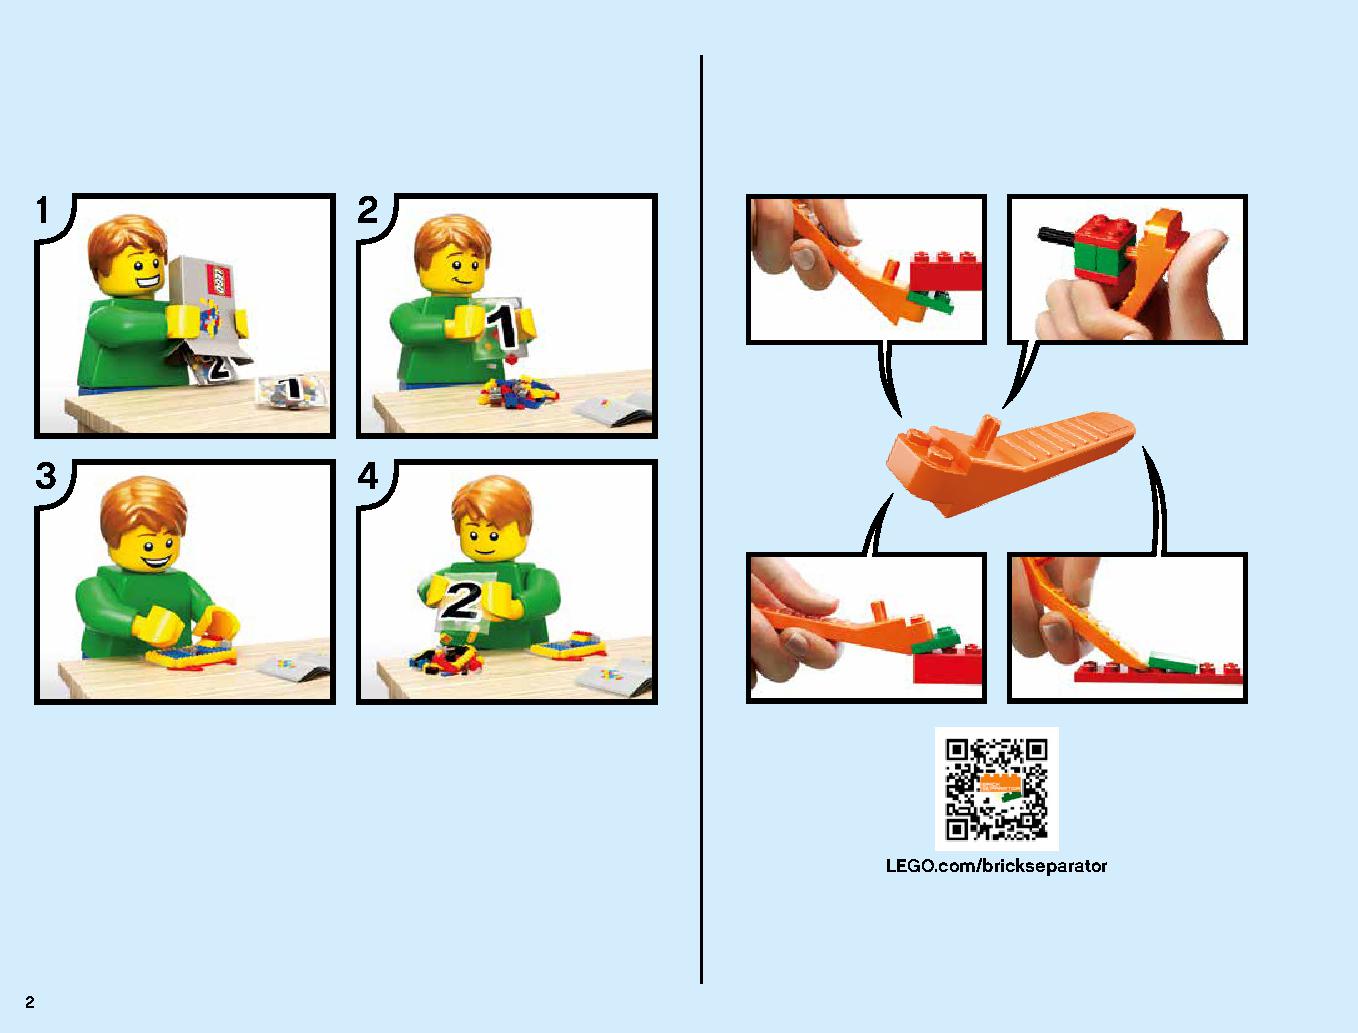 ハンティング・デスストライカー 70654 レゴの商品情報 レゴの説明書・組立方法 2 page